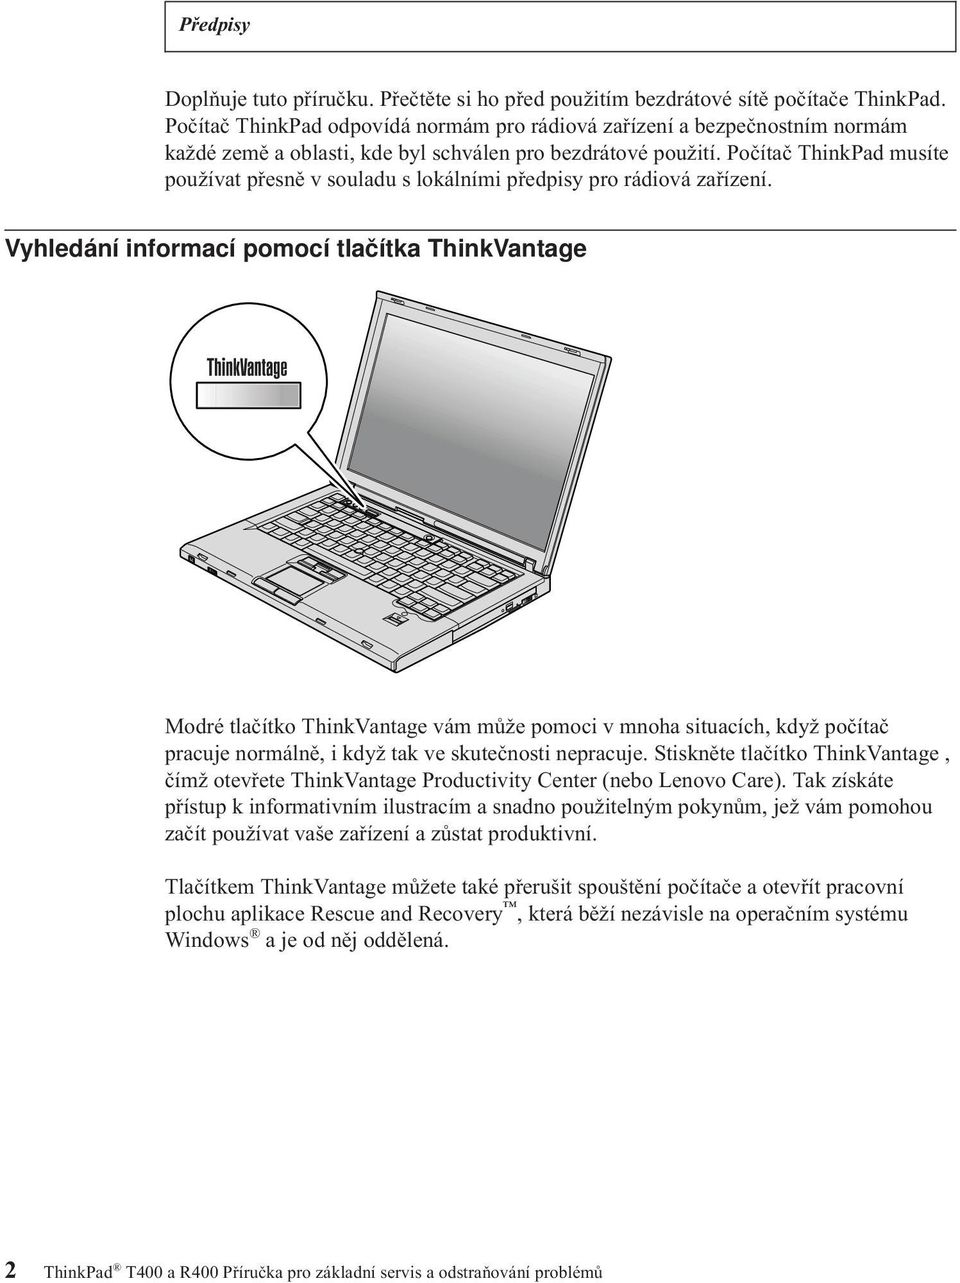 Počítač ThinkPad musíte používat přesně v souladu s lokálními předpisy pro rádiová zařízení.